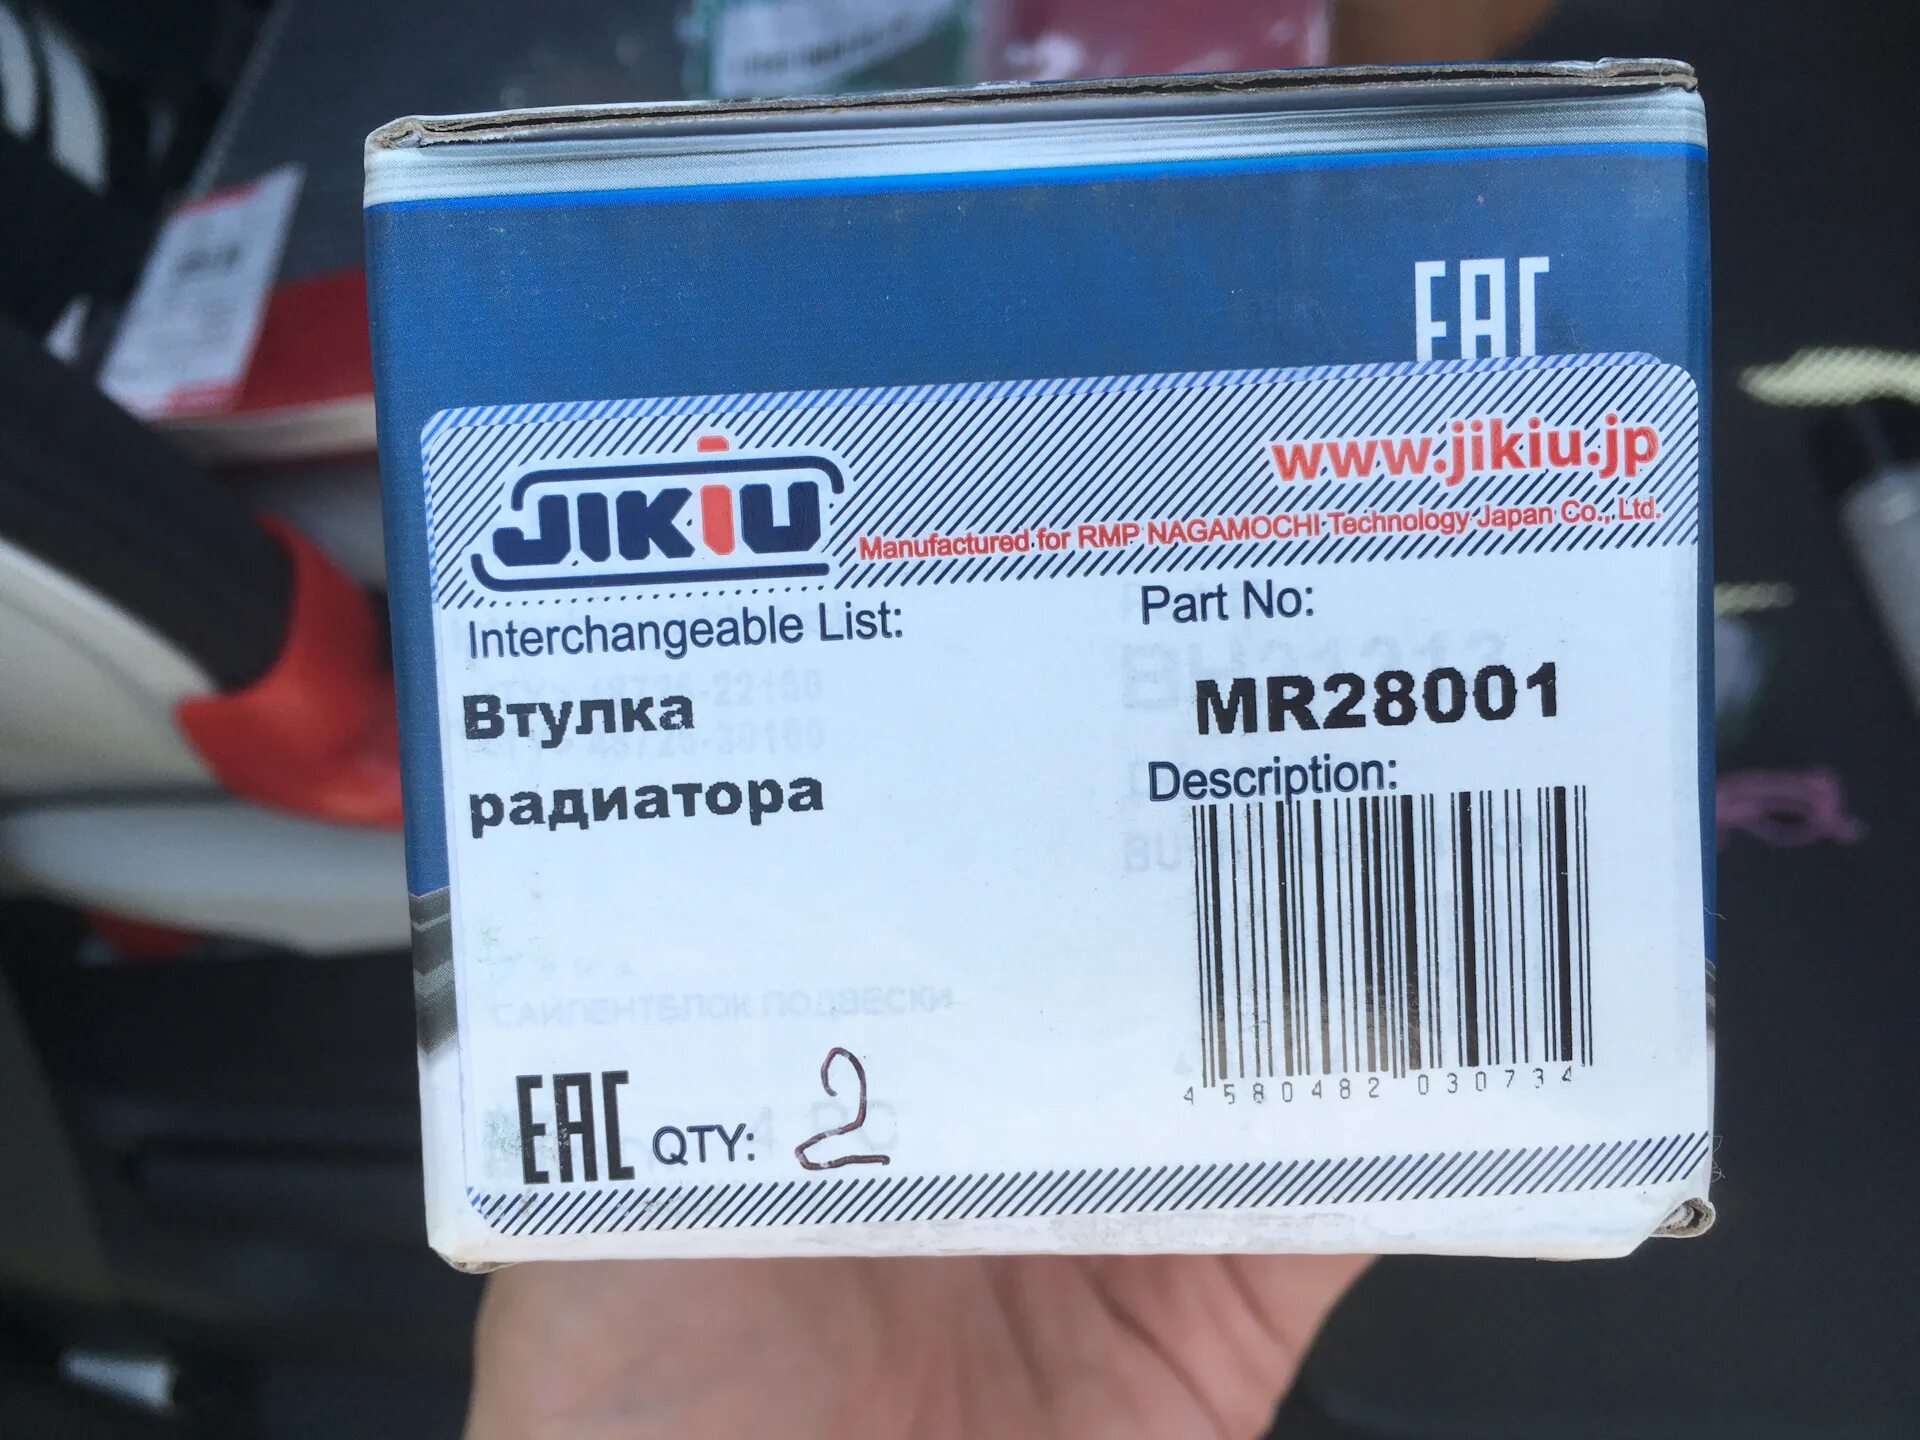 Jikiu страна производитель. JIKIU mr22001 втулка радиатора. JIKIU mr22002 втулка радиатора. JIKIU mr28001 втулка радиатора.